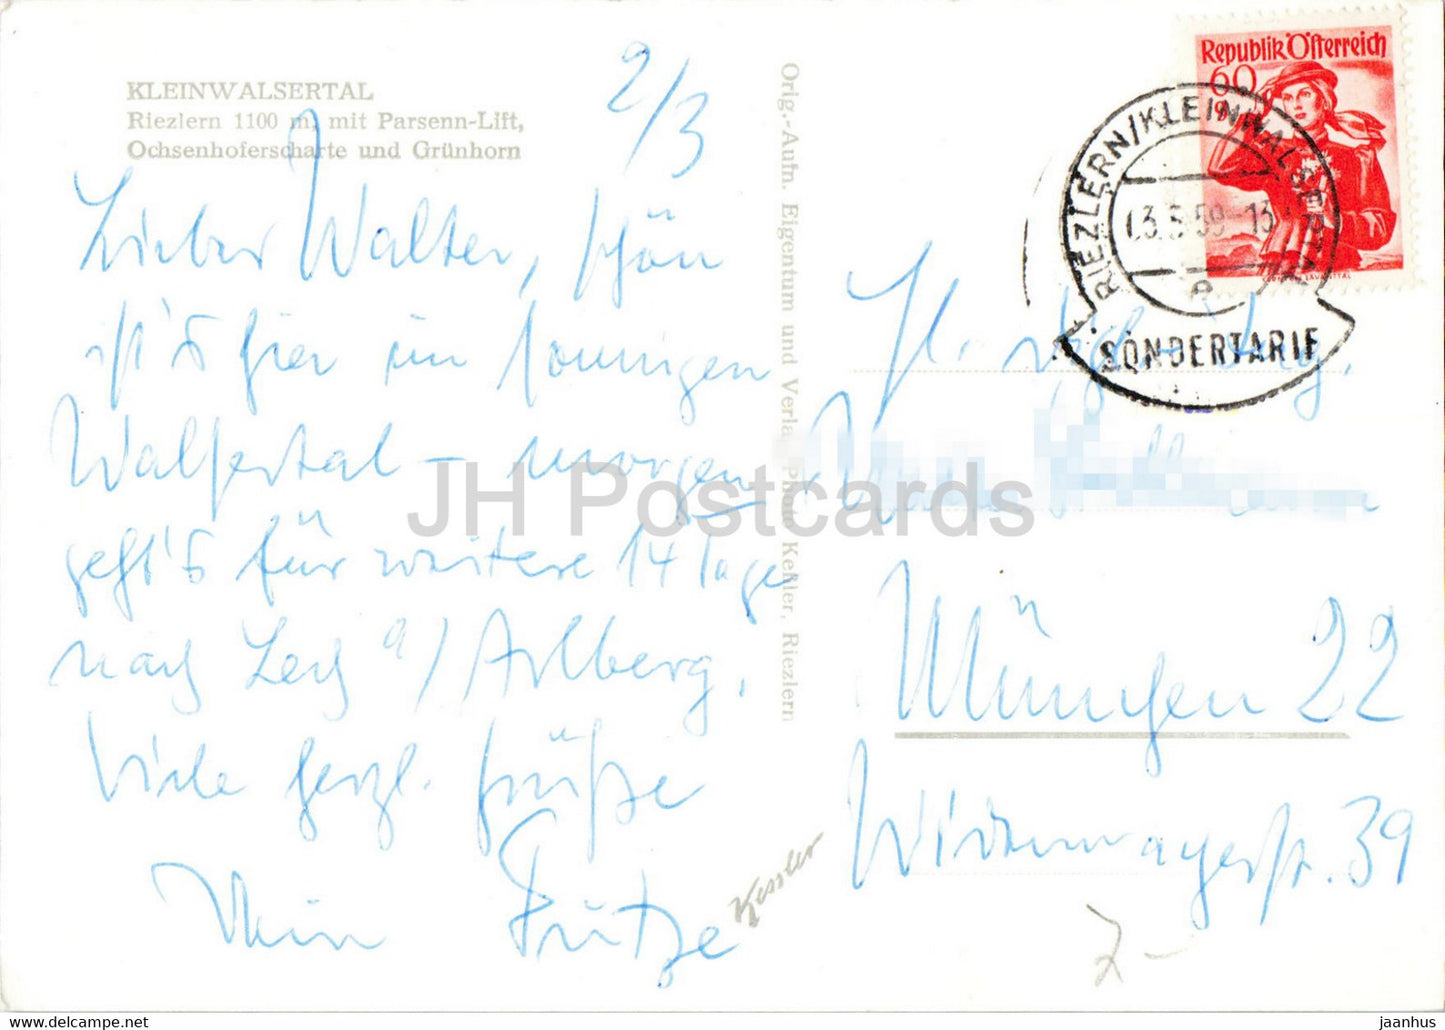 Kleinwalsertal - Riezlern 1100 m mit Parsenn Lift - Carte postale ancienne Ochsenhoferscharte und Grunhon - 1959 - Autriche - utilisé